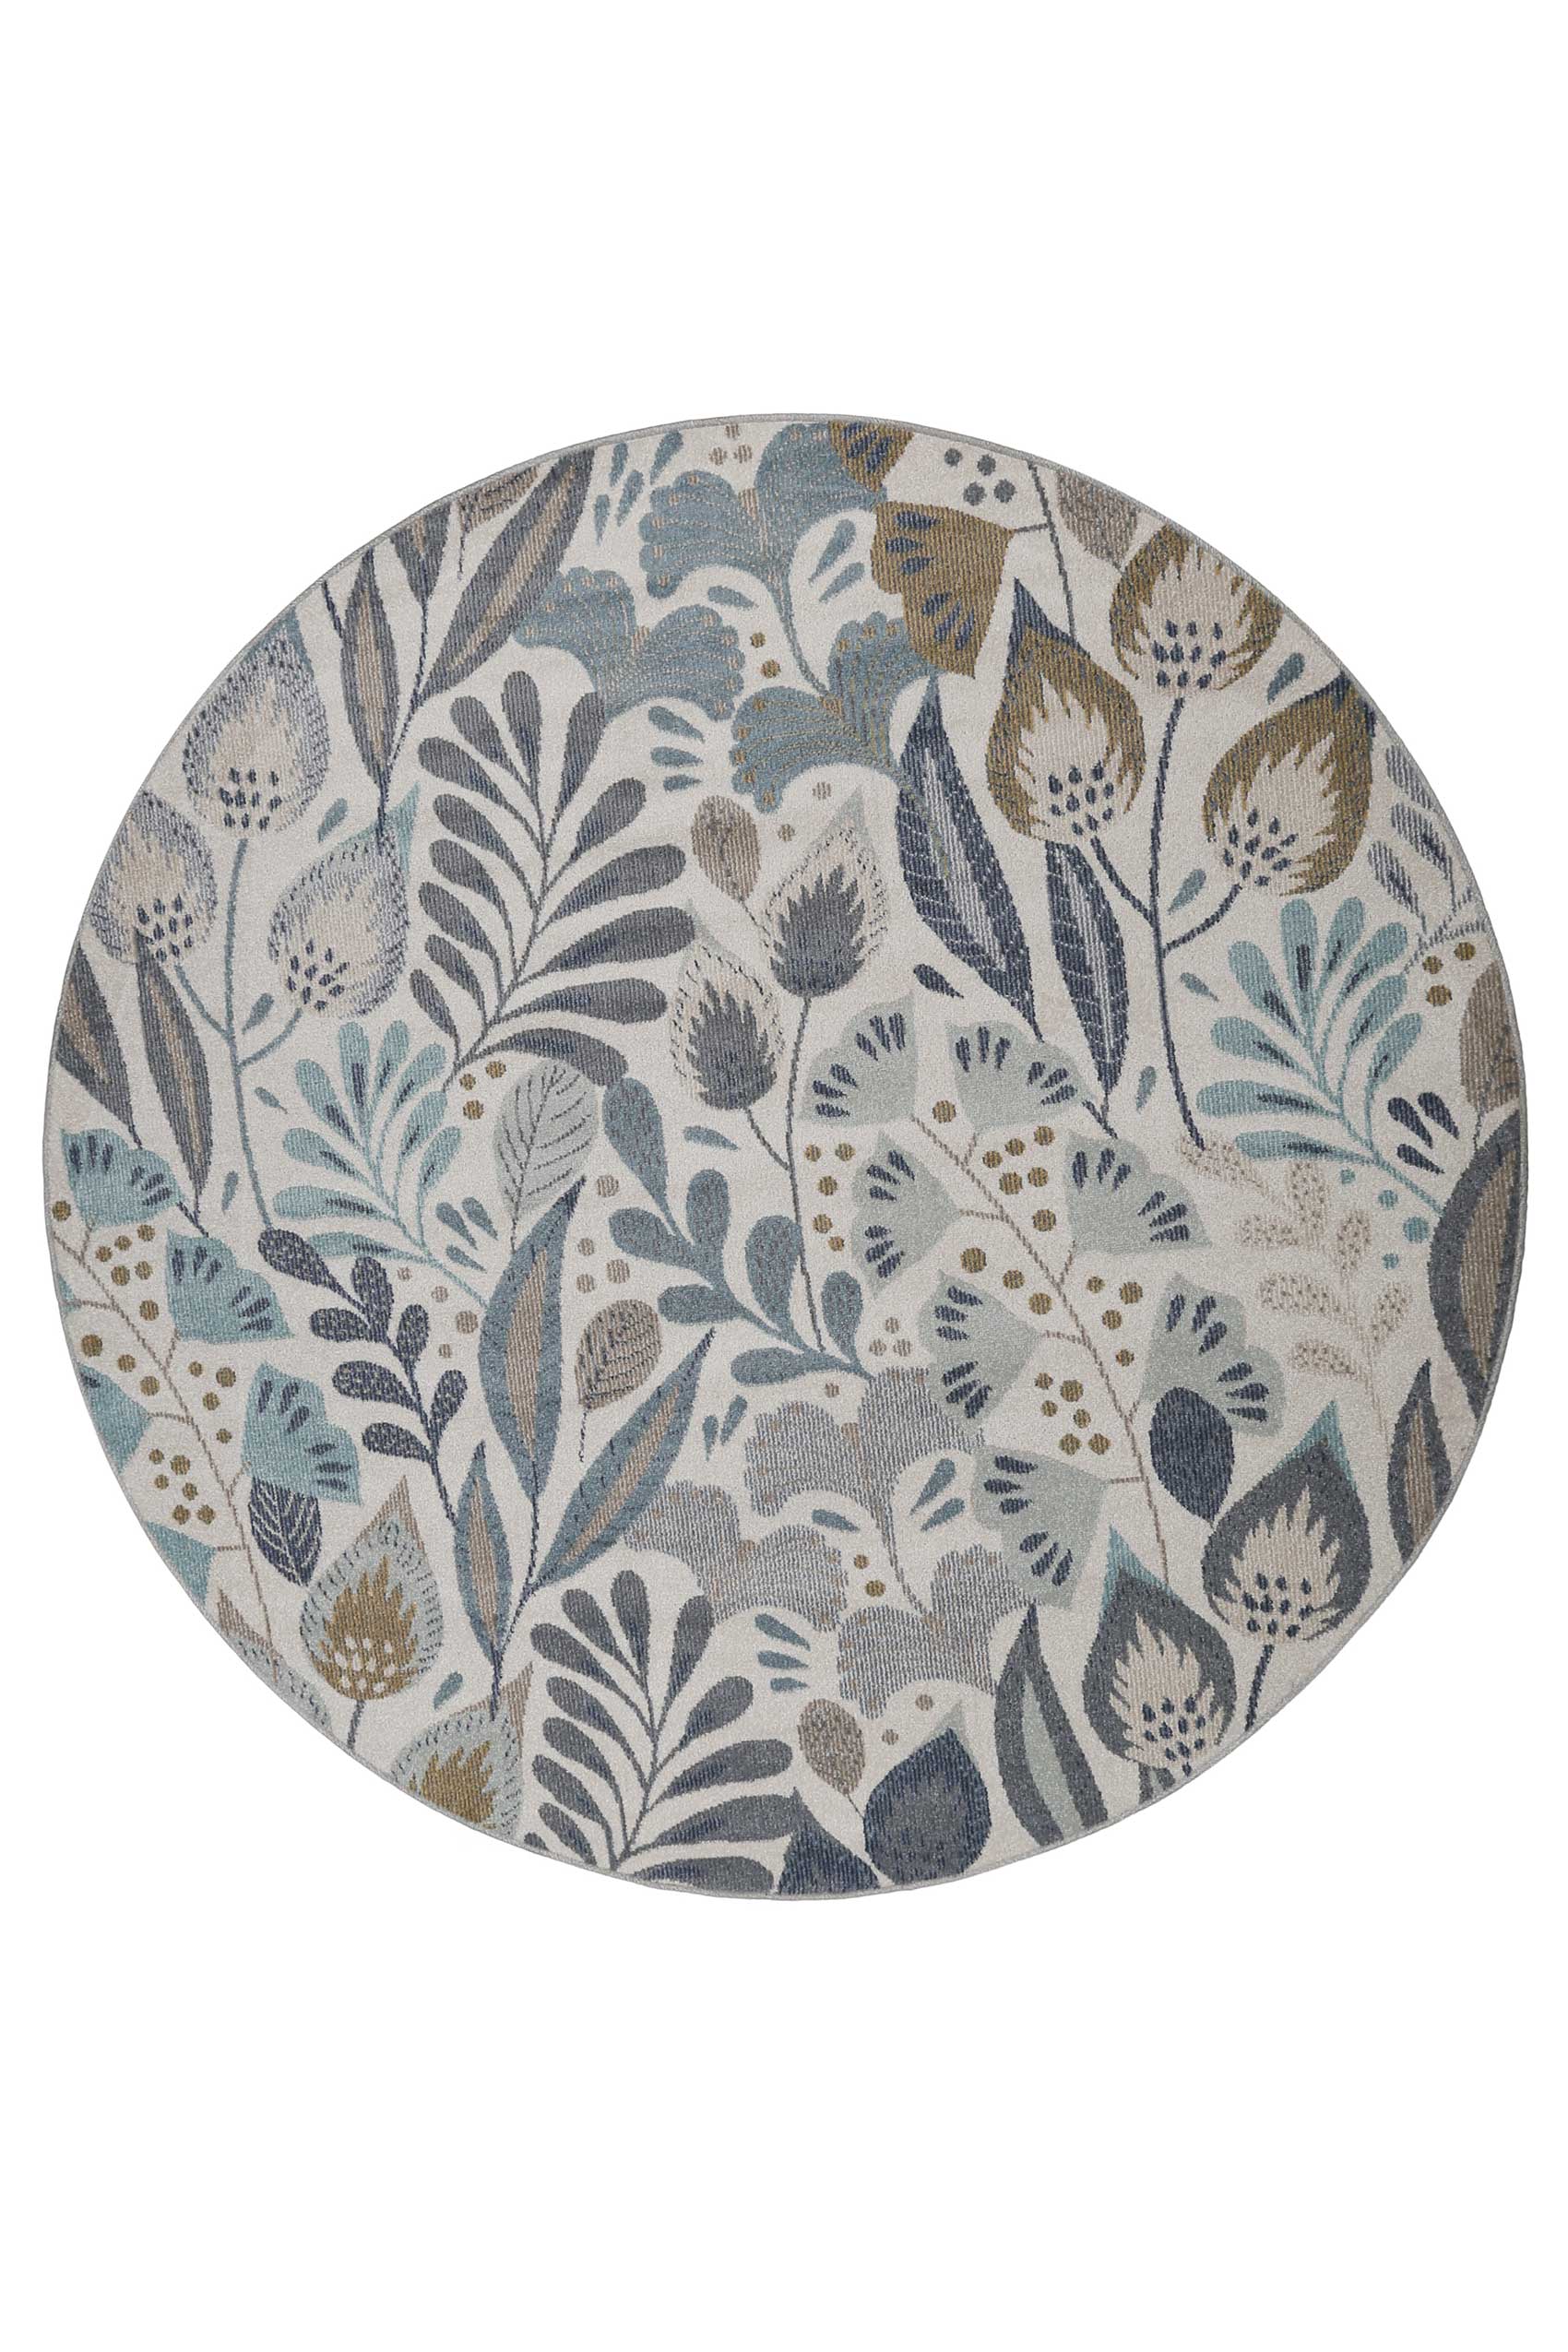 Tapis rond exterieur thème floral bleu beige en polypropylène 120D